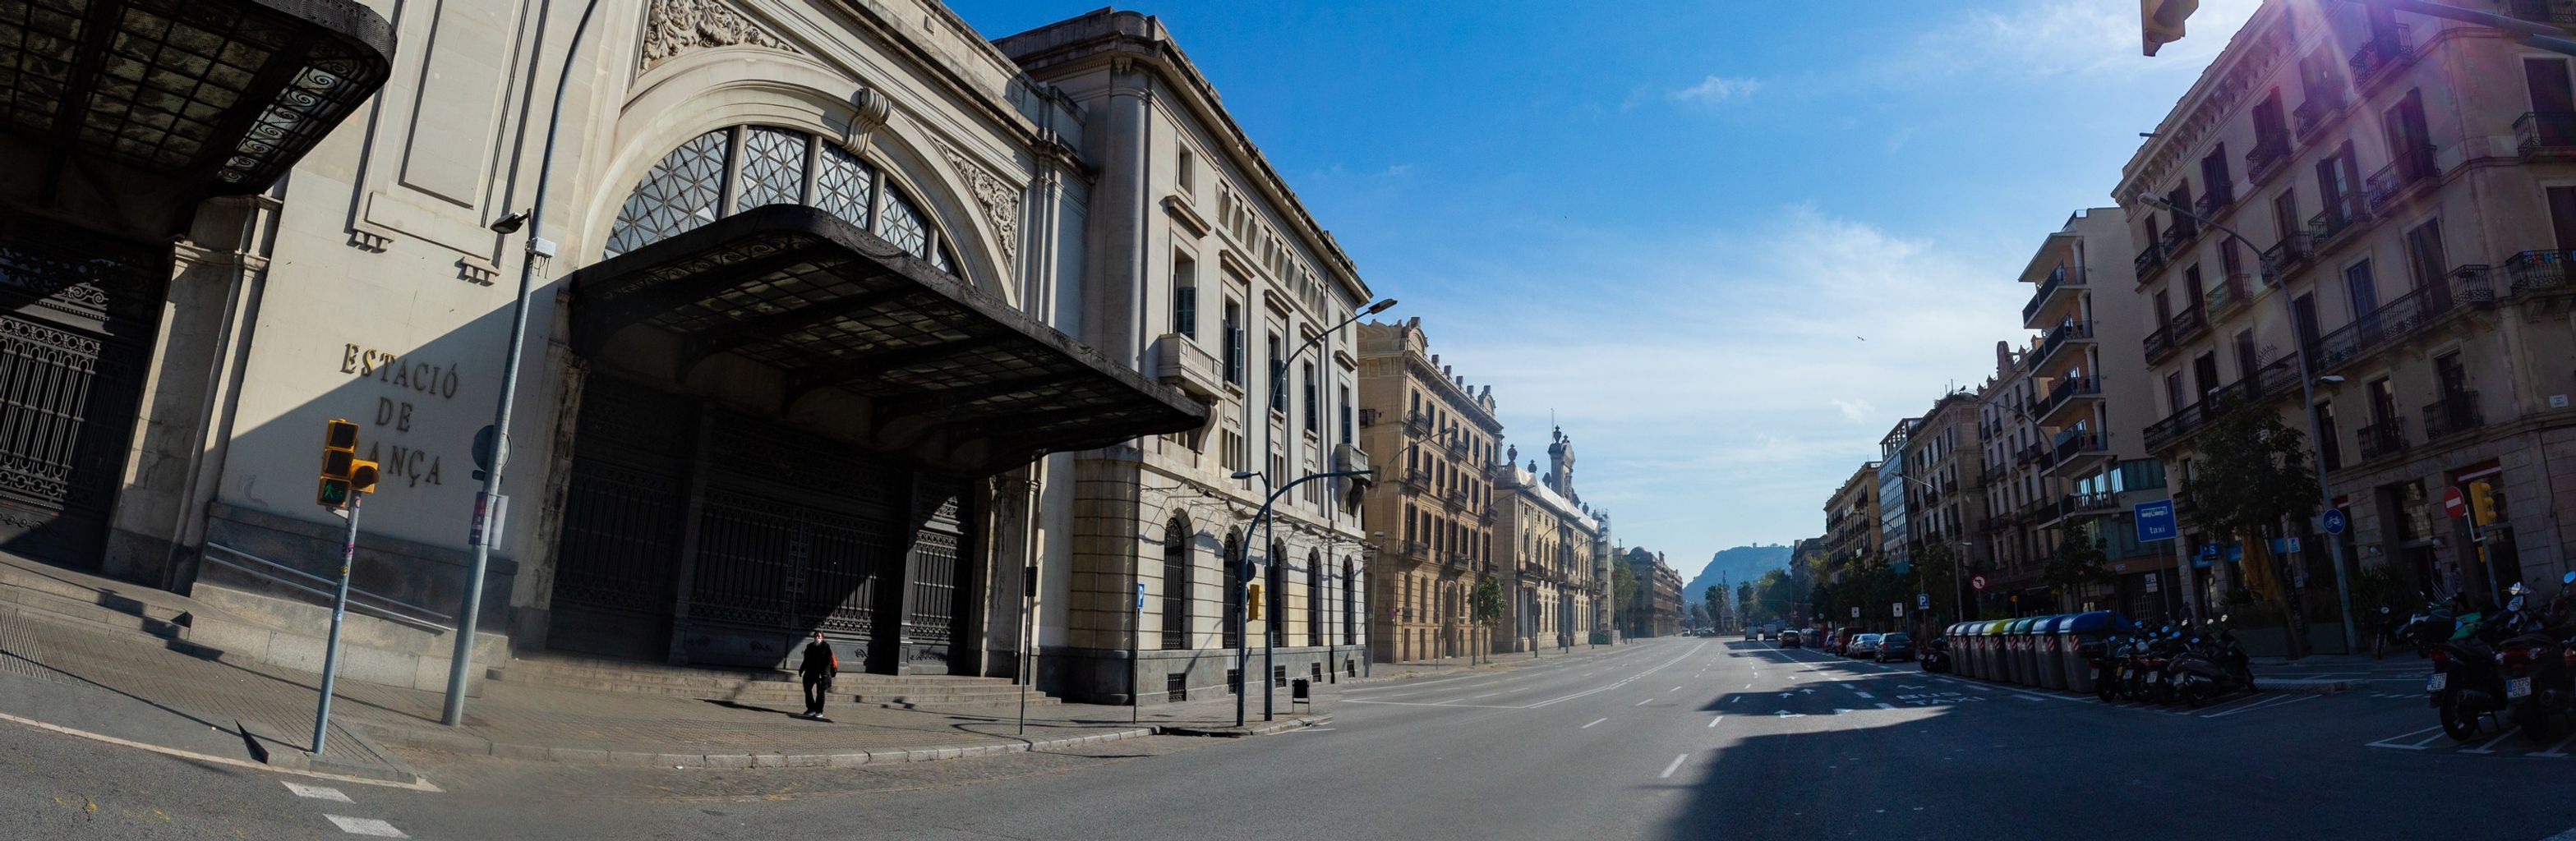 Avenida del Marquès de l’Argentera sin coches y una persona frente a la estación de Francia. Distrito de Ciutat Vella. Barrio de Sant Pere, Santa Caterina i la Ribera.